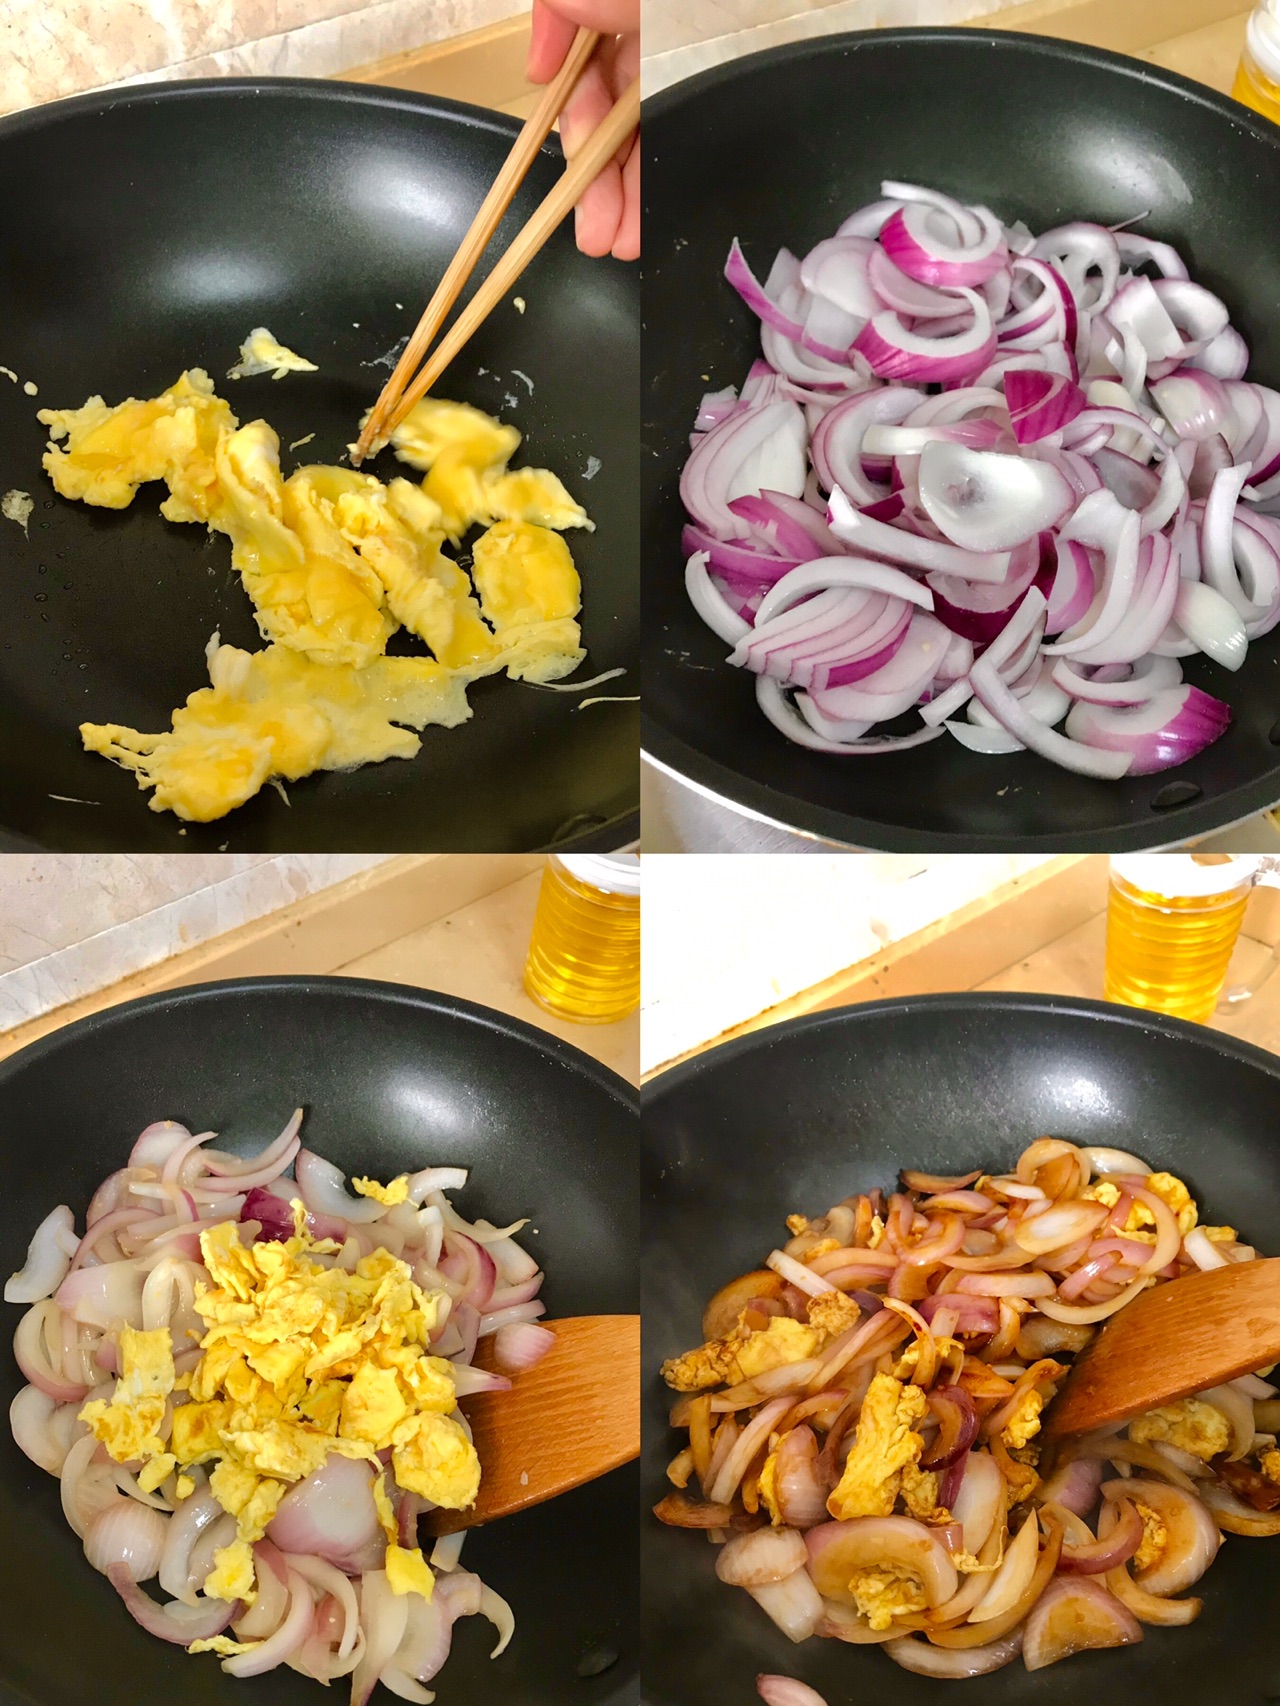 洋葱炒鸡蛋的做法_【图解】洋葱炒鸡蛋怎么做如何做好吃_洋葱炒鸡蛋家常做法大全_阿戈_豆果美食